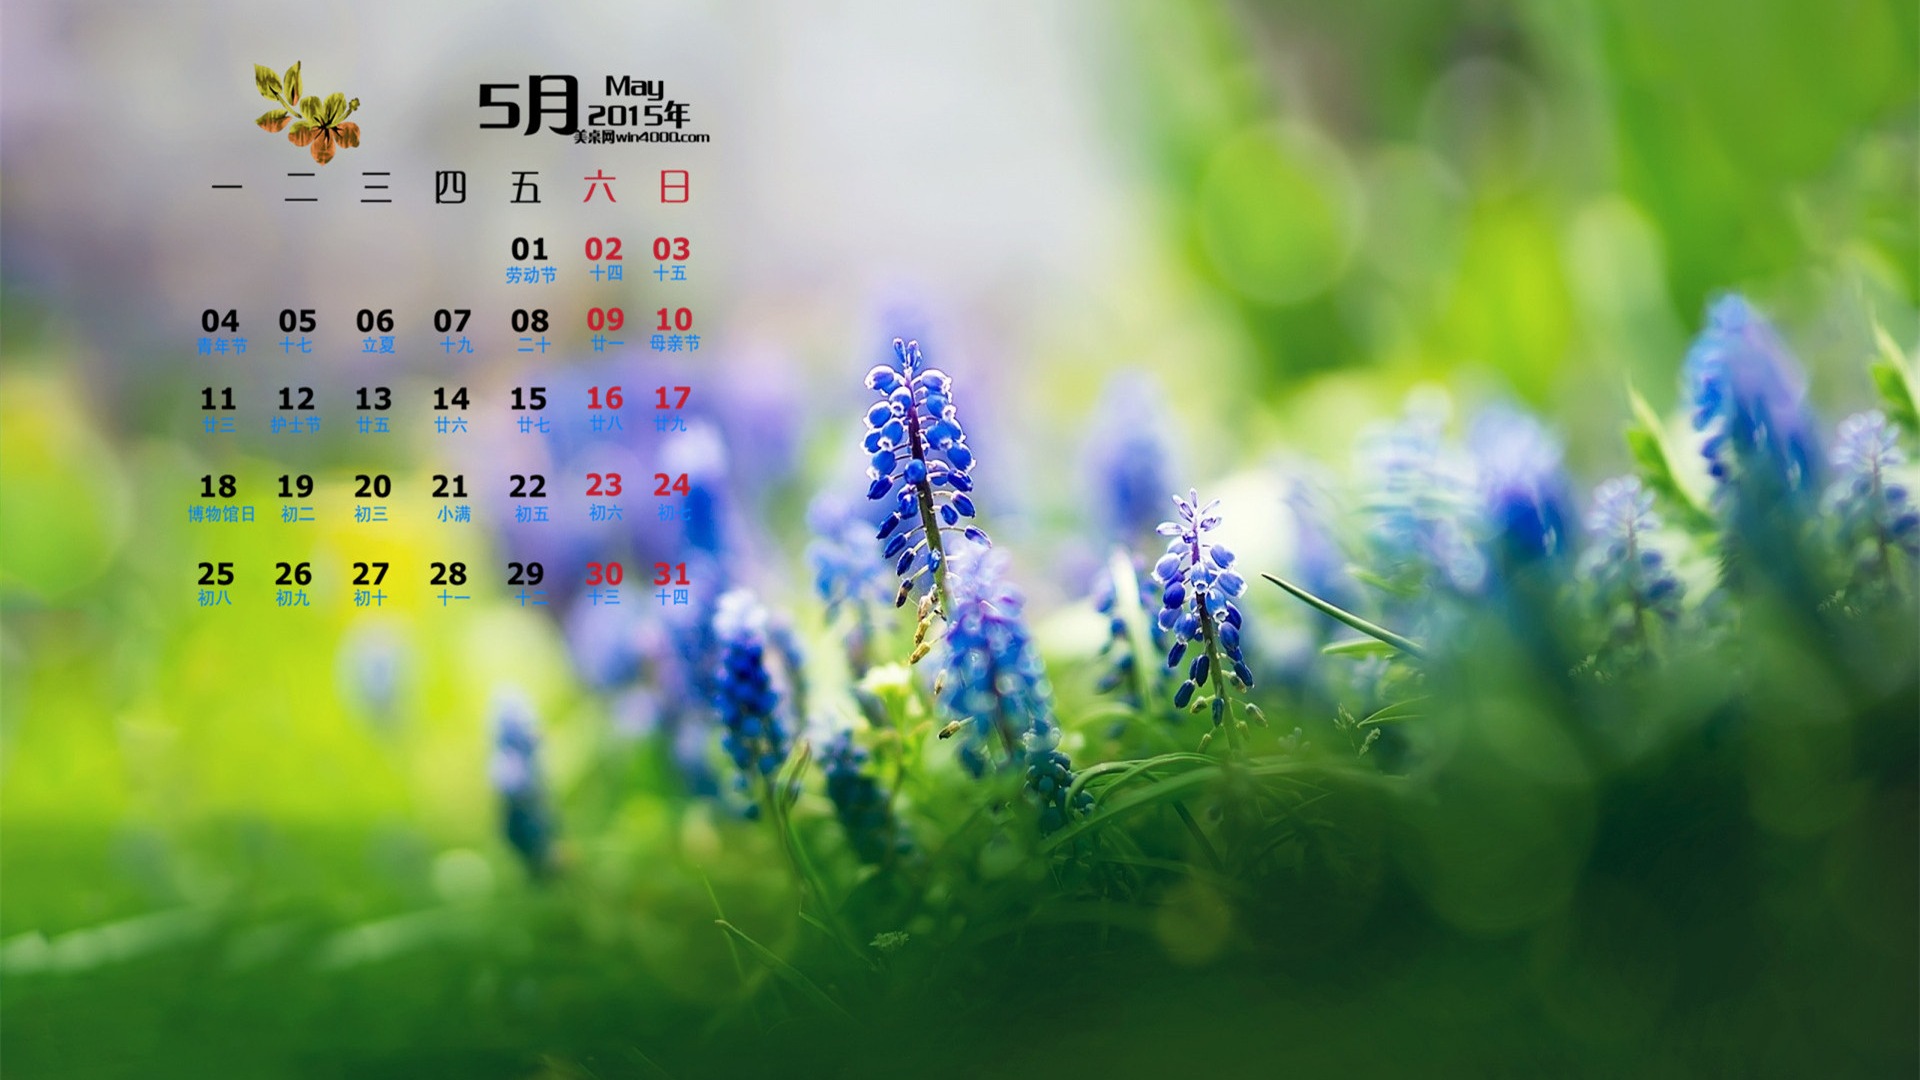 Mai 2015 Kalender Wallpaper (1) #16 - 1920x1080